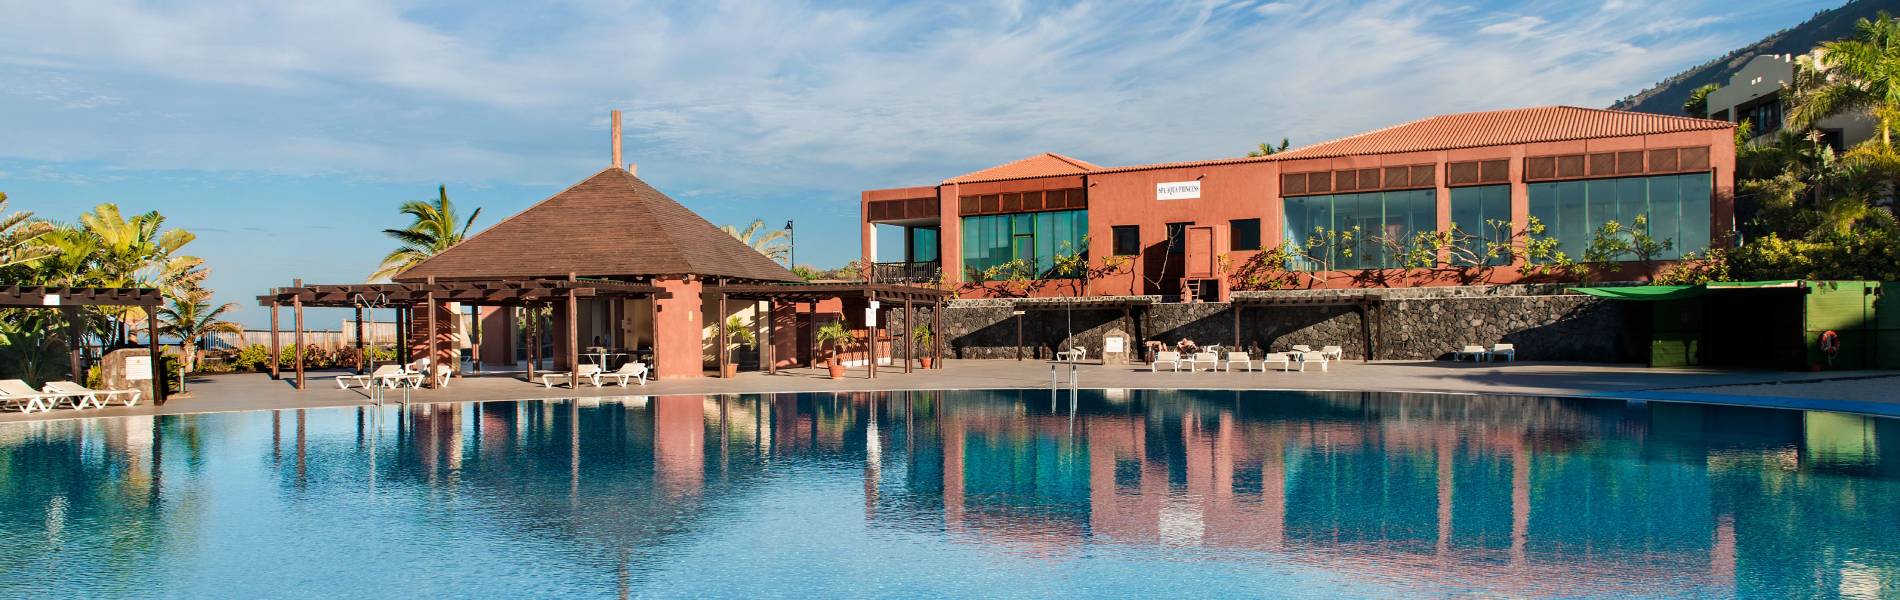 Pool at Hotel La Palma Princess